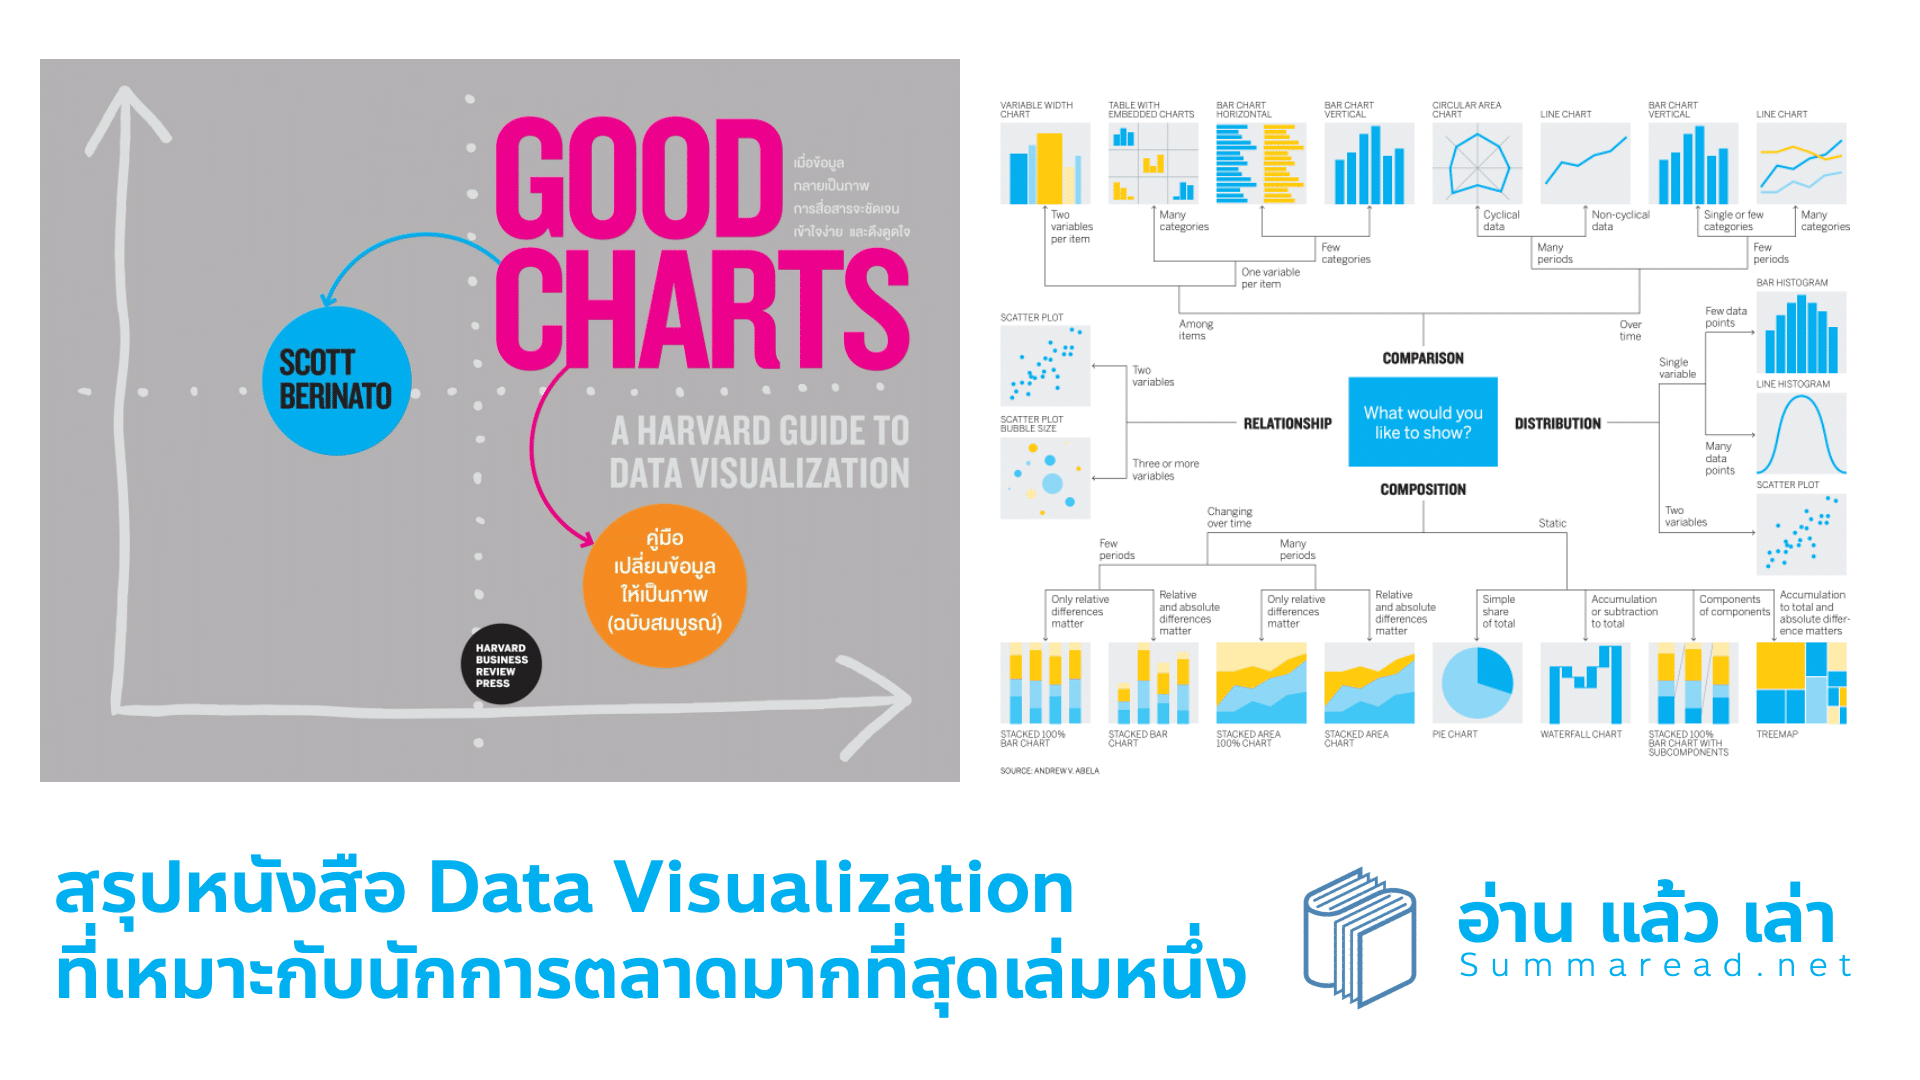 สรุปหนังสือ Good Charts คู่มือเปลี่ยนข้อมูลให้เป็นภาพ A Harvard Guide to Data Visualization ทักษะการตั้งคำถามแกับดาต้า และอ่านดาต้าให้ออก